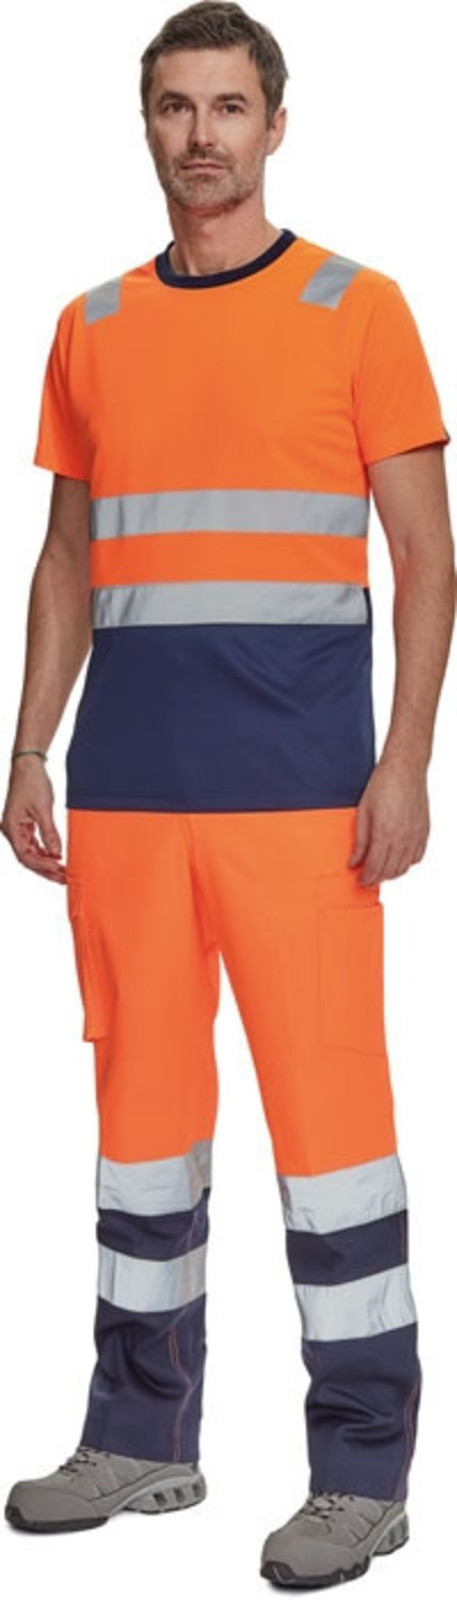 Reflexné tričko Cerva Monzon HV - veľkosť: L, farba: oranžová/navy